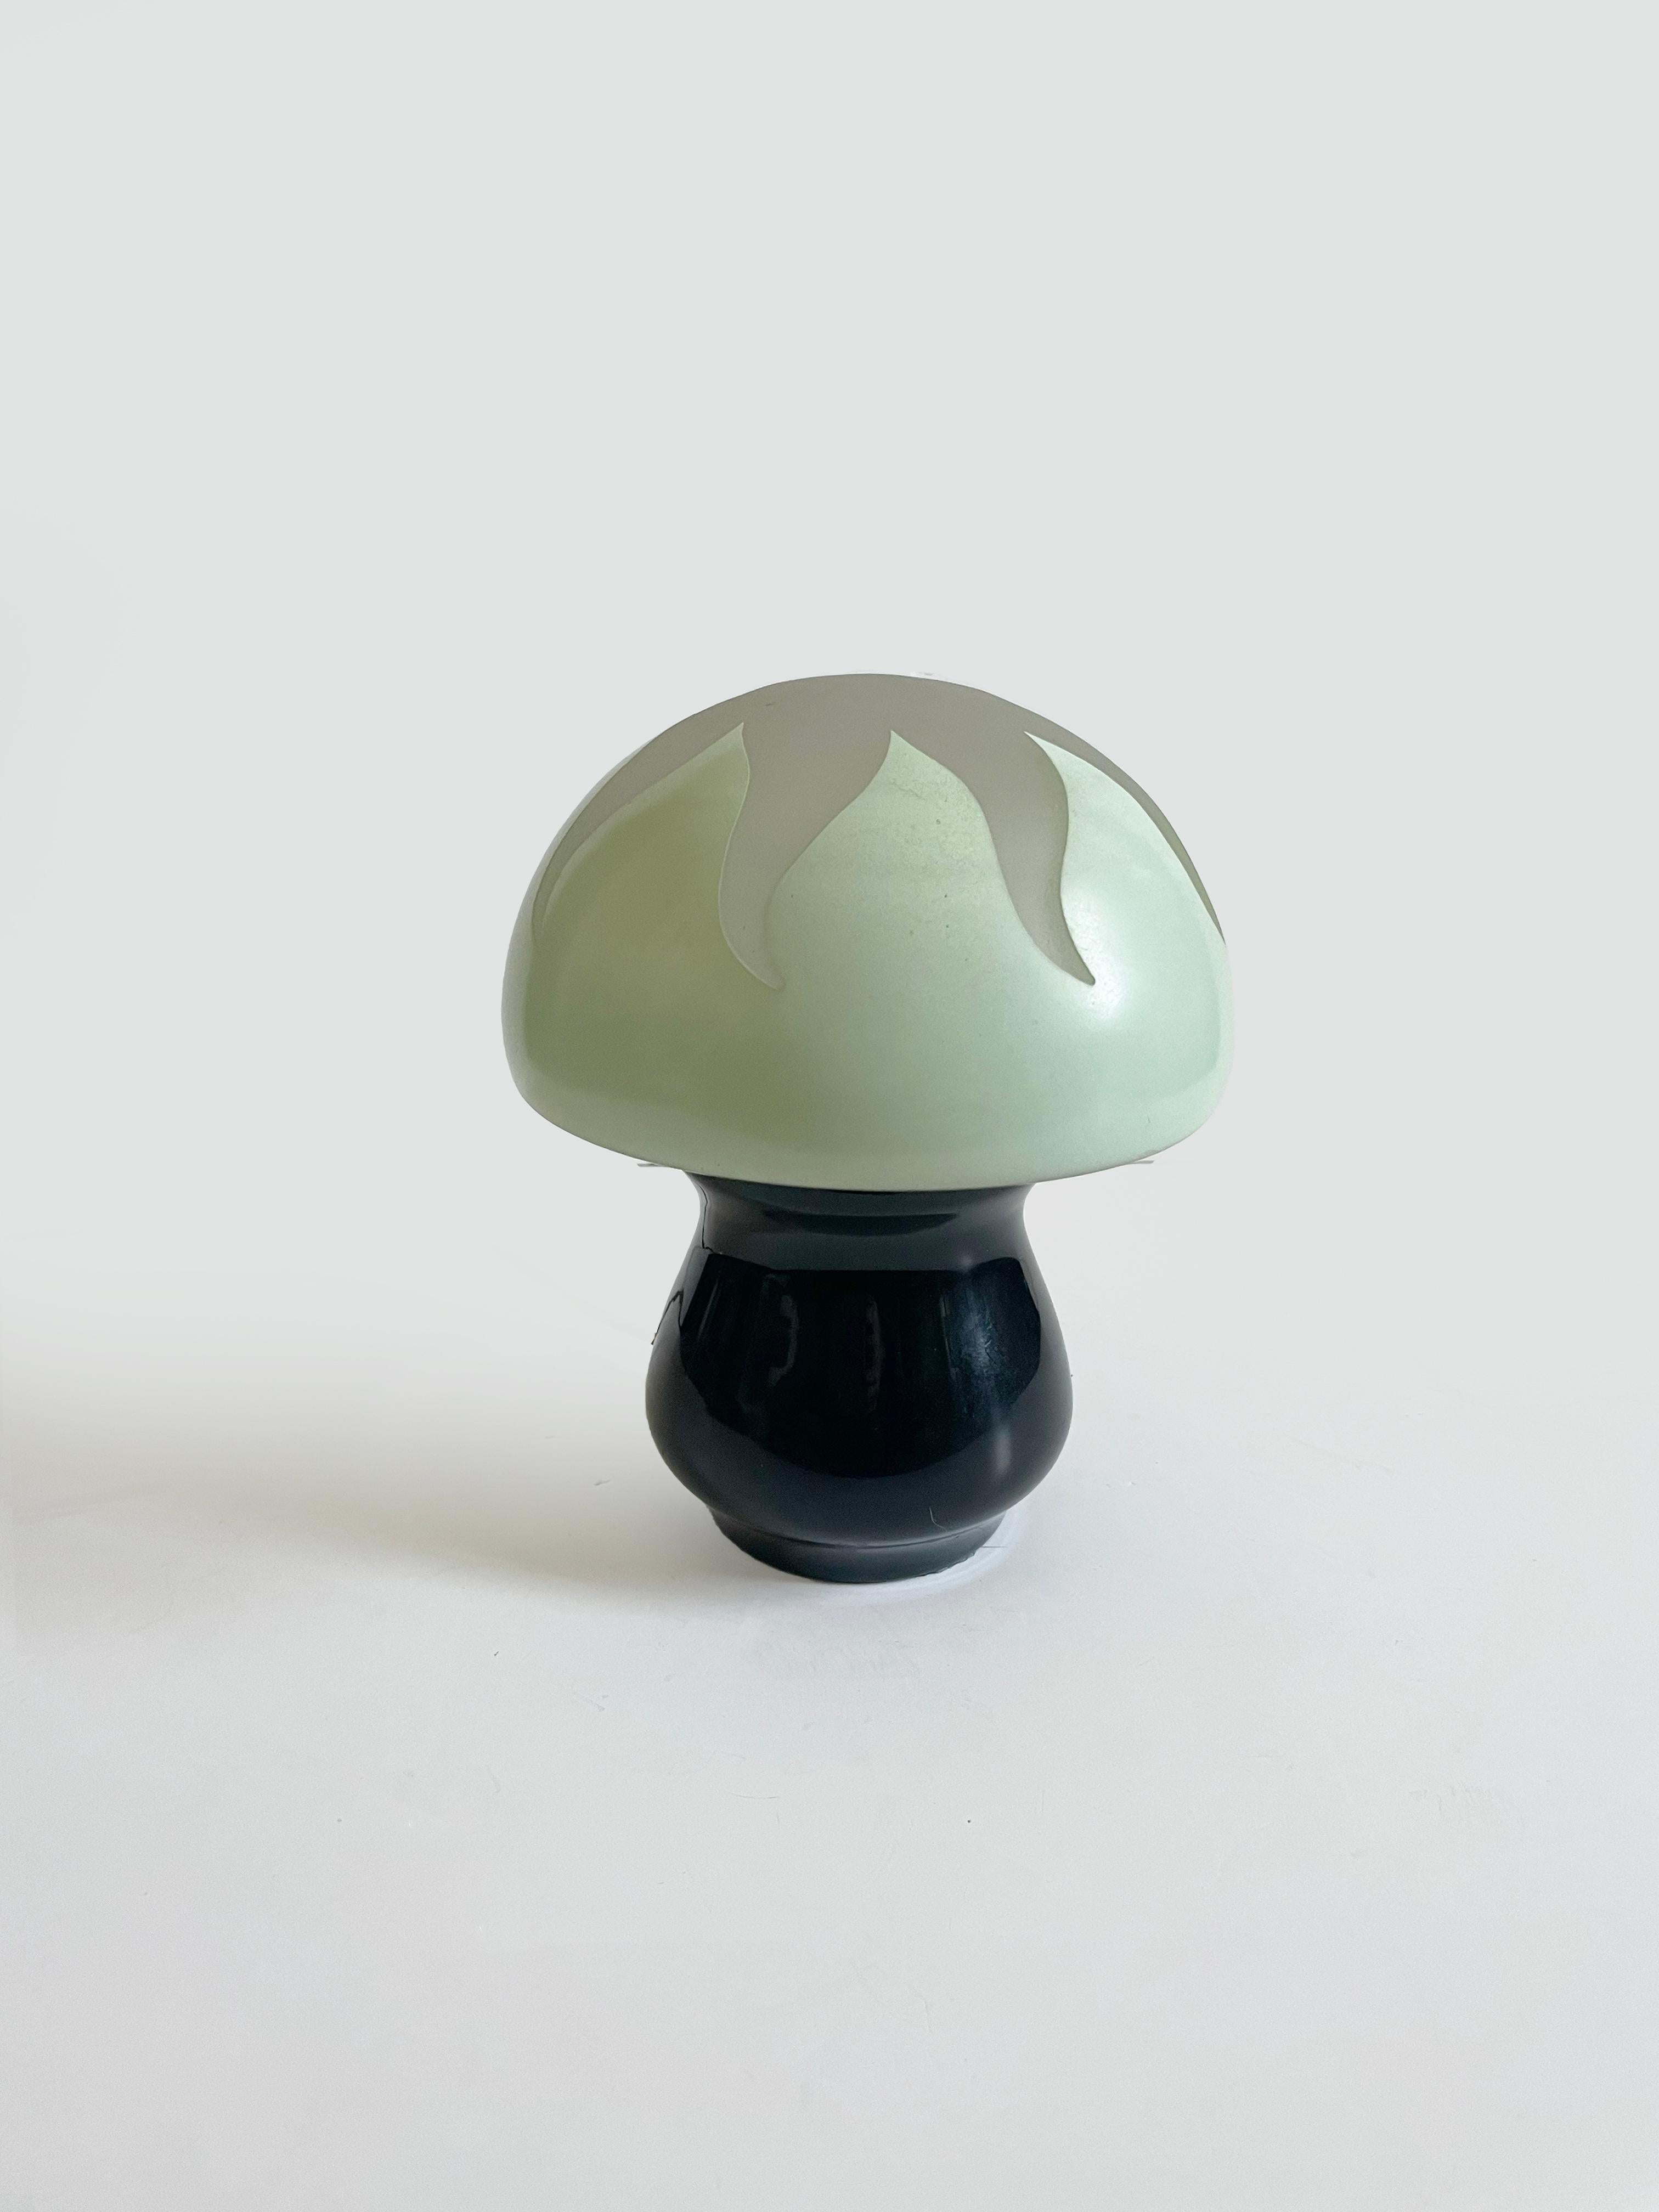 Unique petite lampe champignon en verre vers 1970 France. Il est orné d'un motif de soleil givré sur le dessus et mesure 7